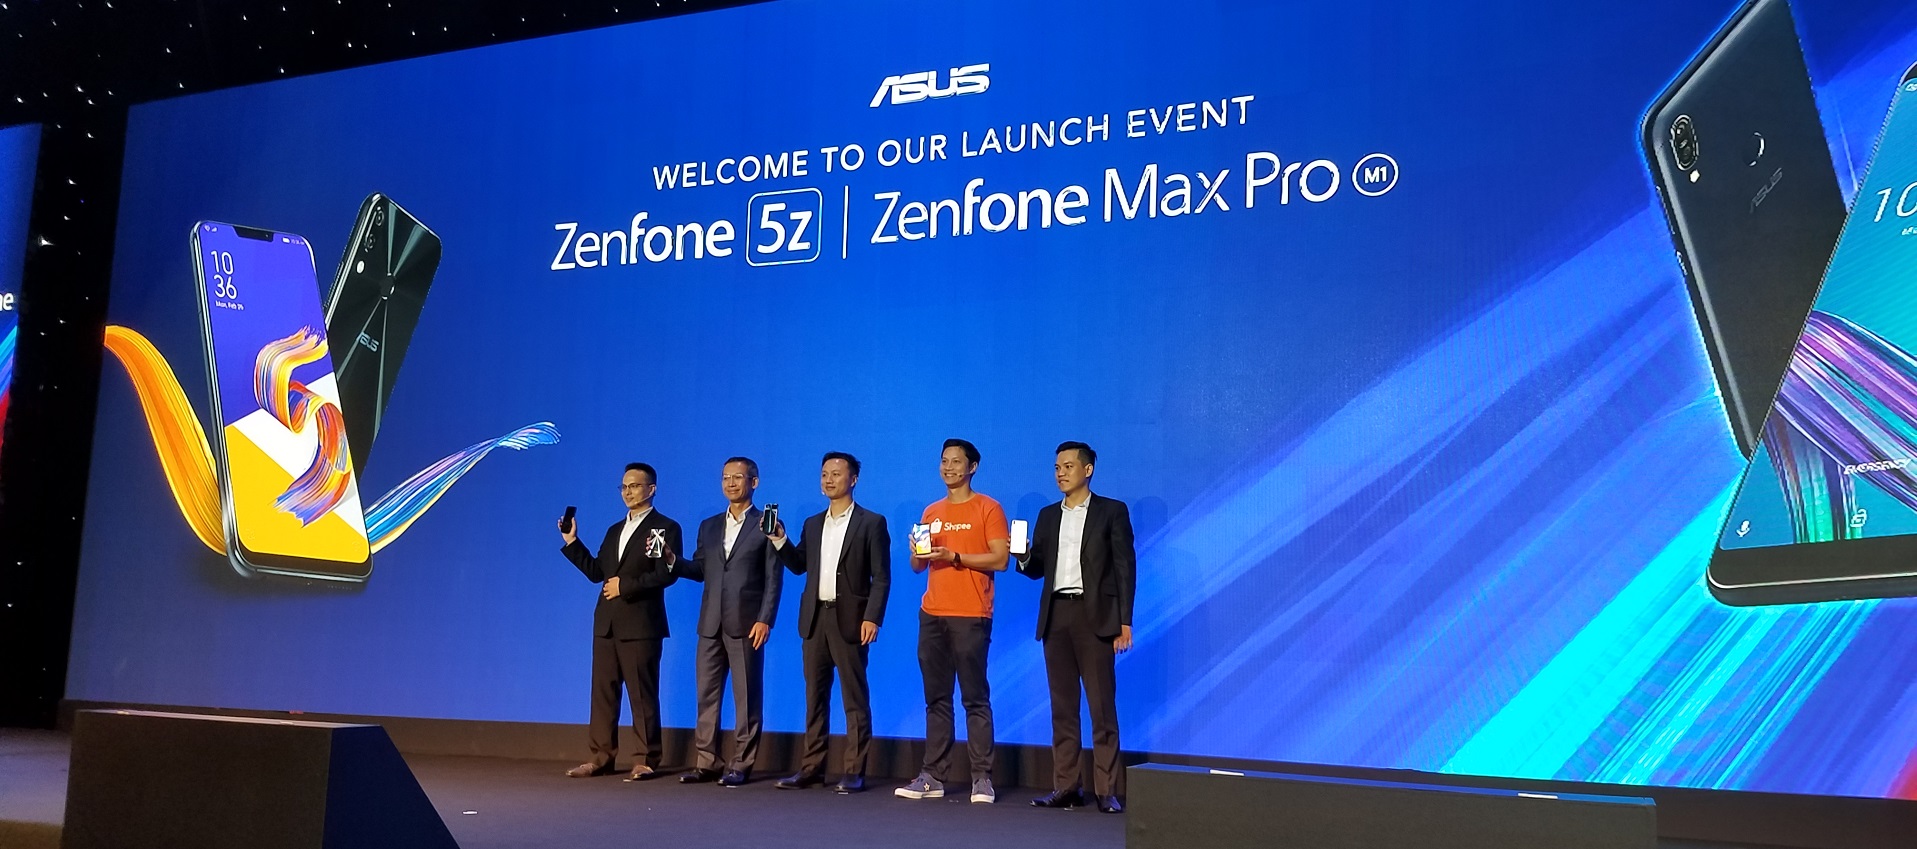 Zenphone Max Pro